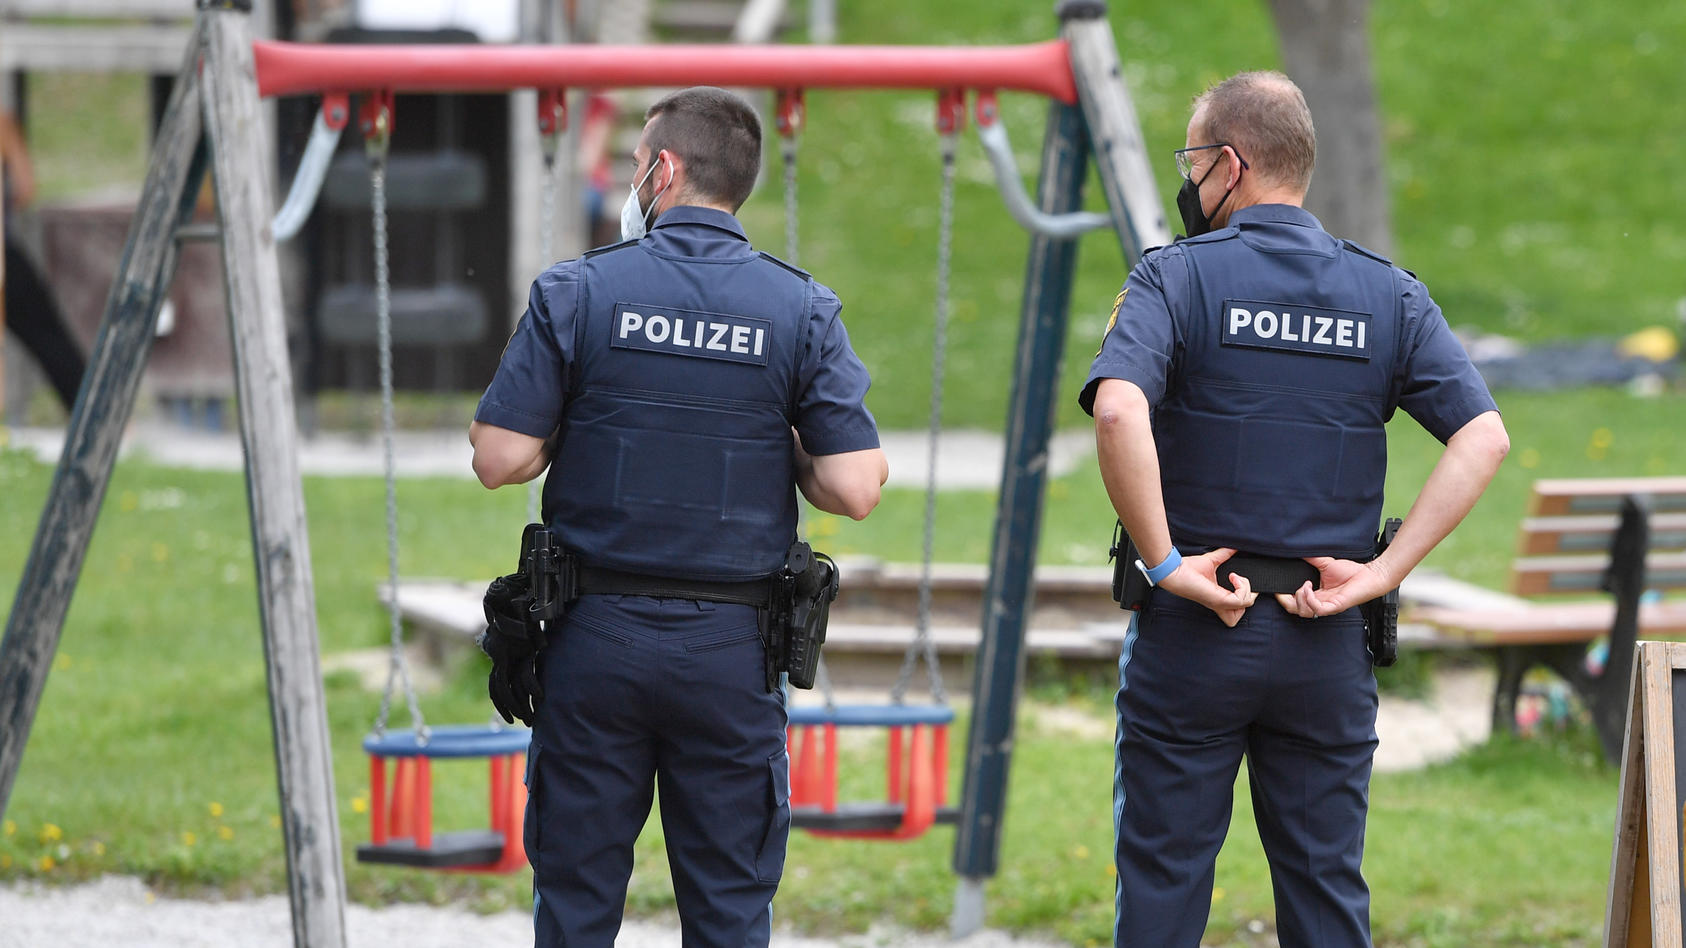 Themenbild KINDERSPIELPLATZ am 10.05.2021 in Kaufering,2 Polizisten in Uniform bewachen einen Spielplatz.